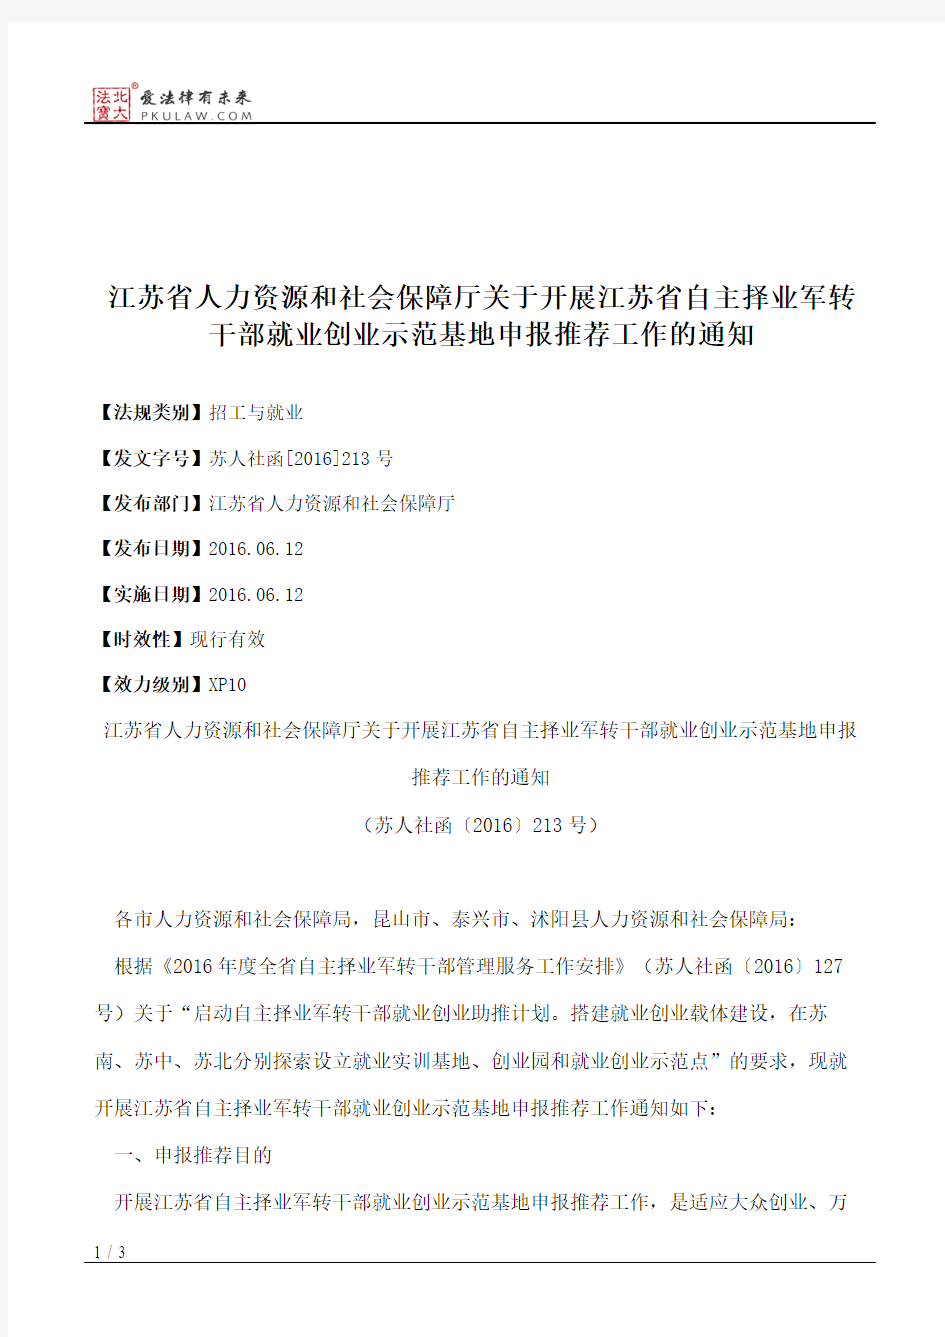 江苏省人力资源和社会保障厅关于开展江苏省自主择业军转干部就业